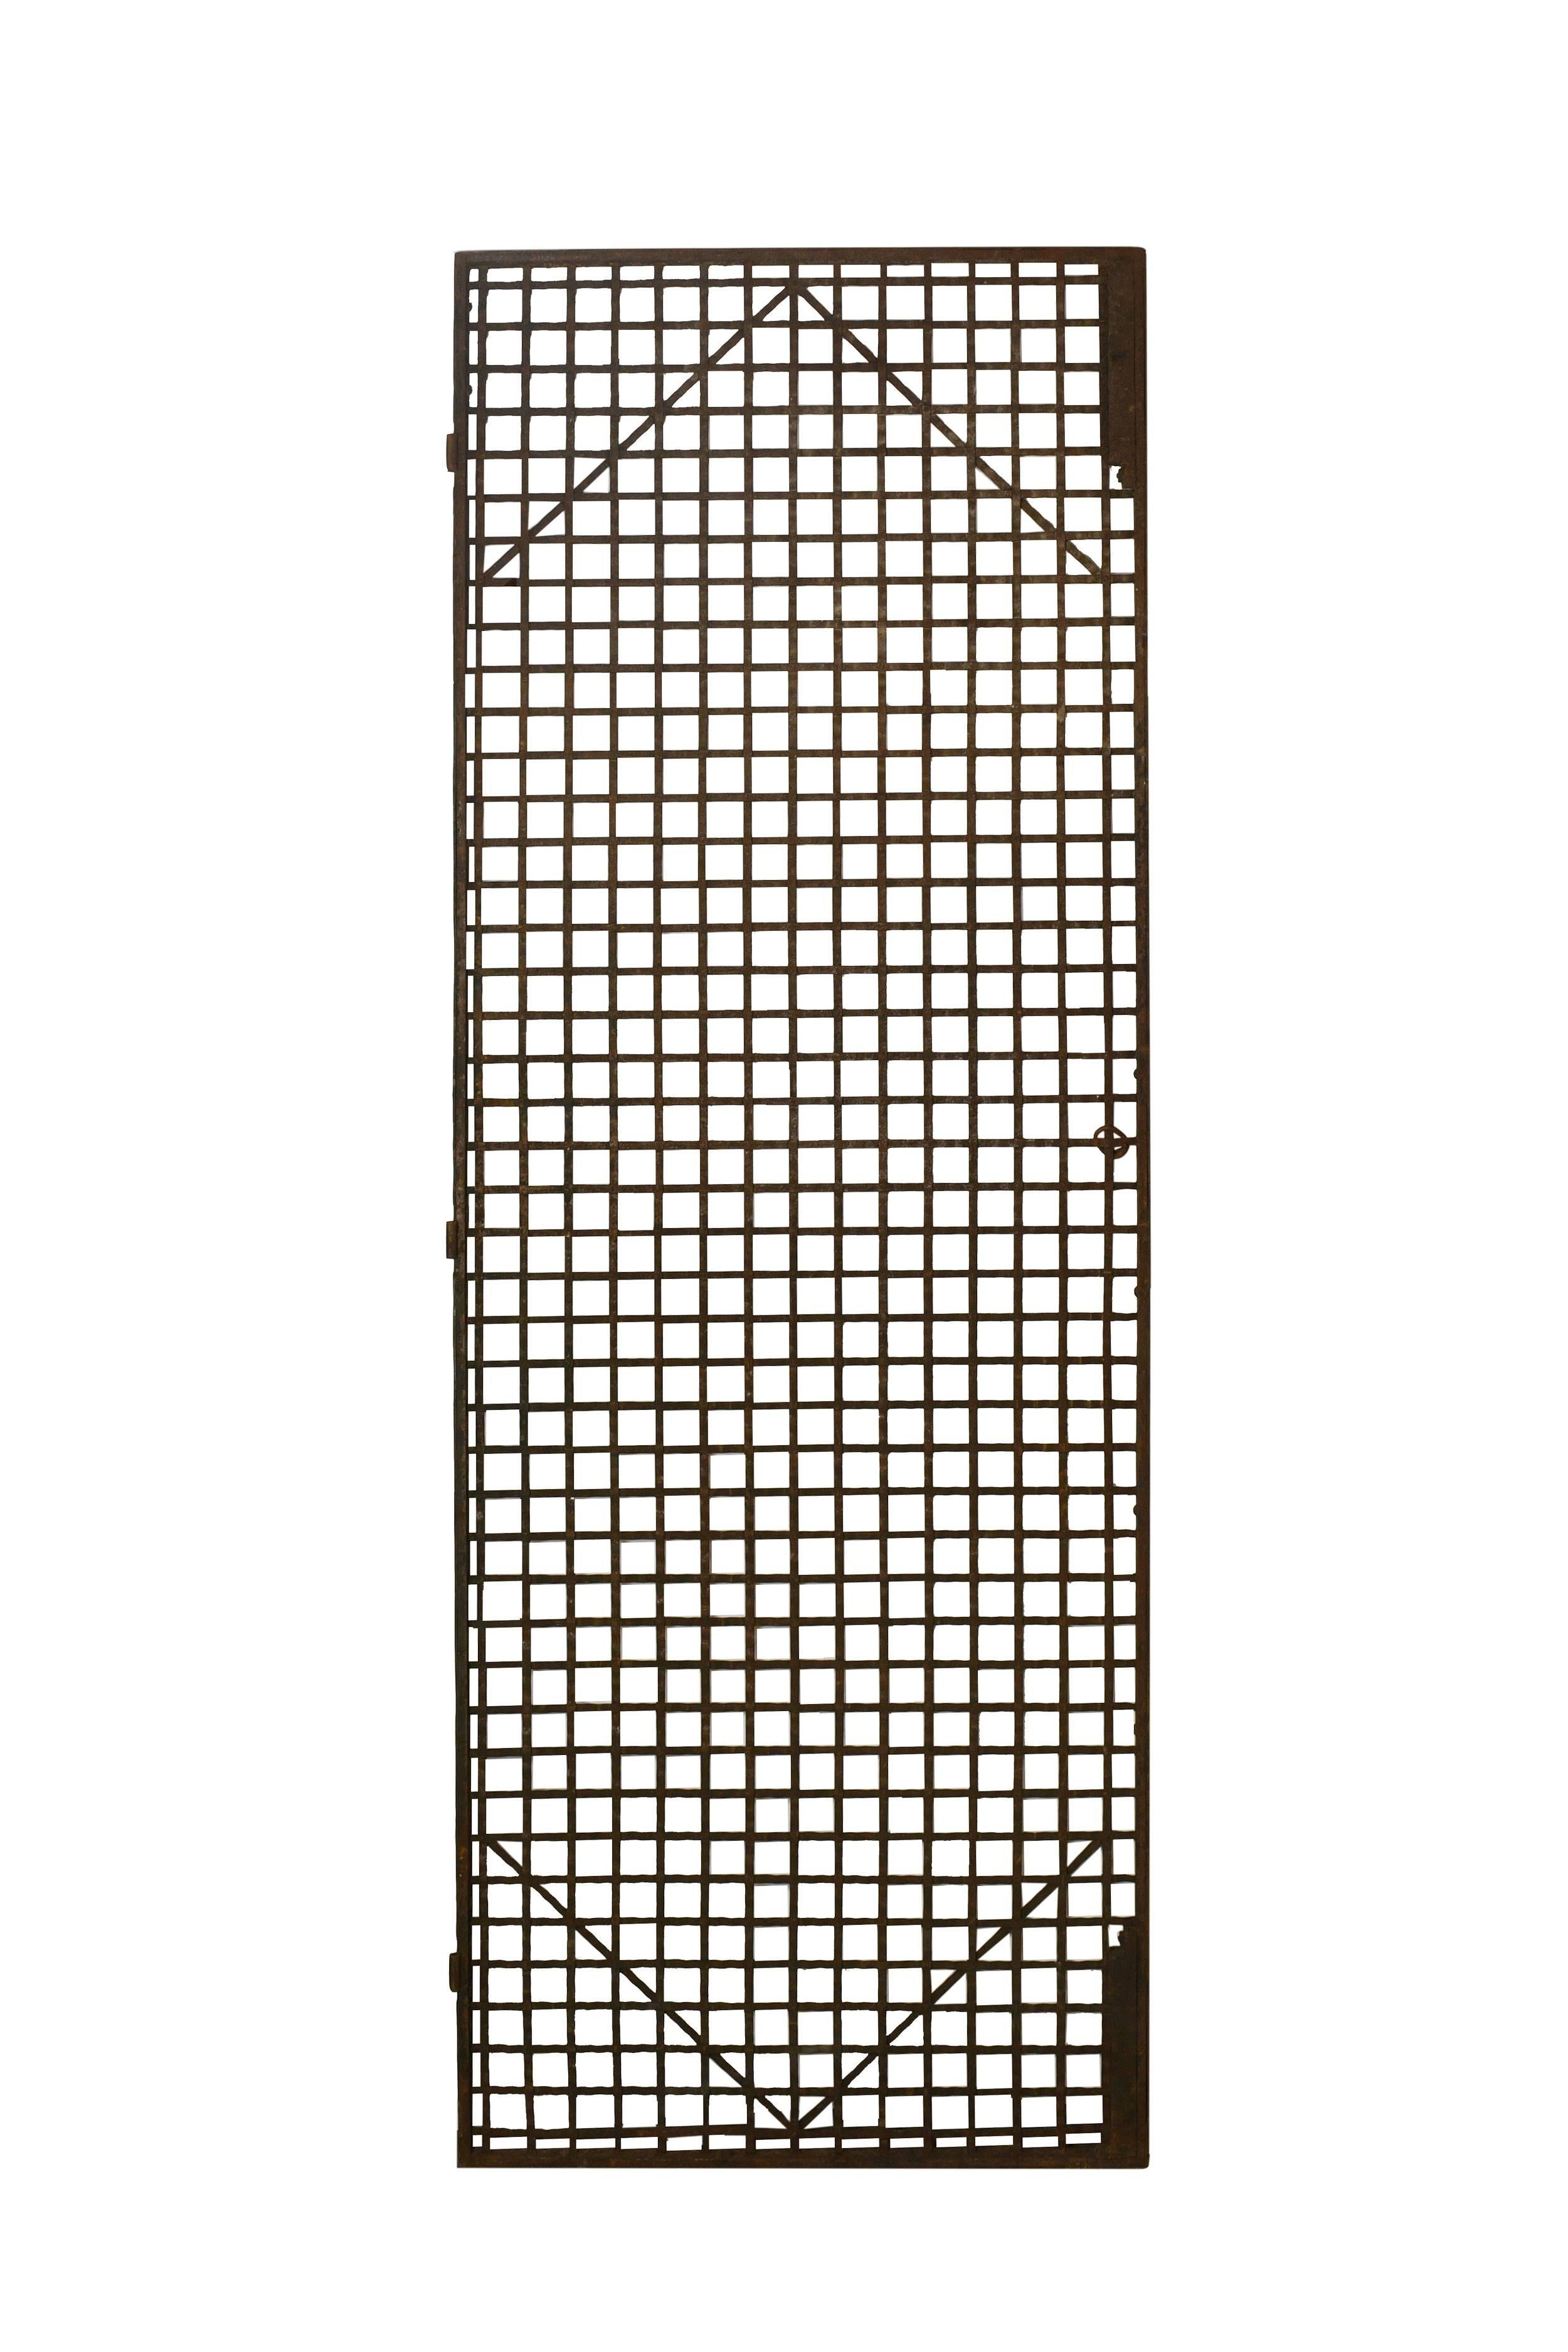 Woven Metal Elevator Cage Doors 3